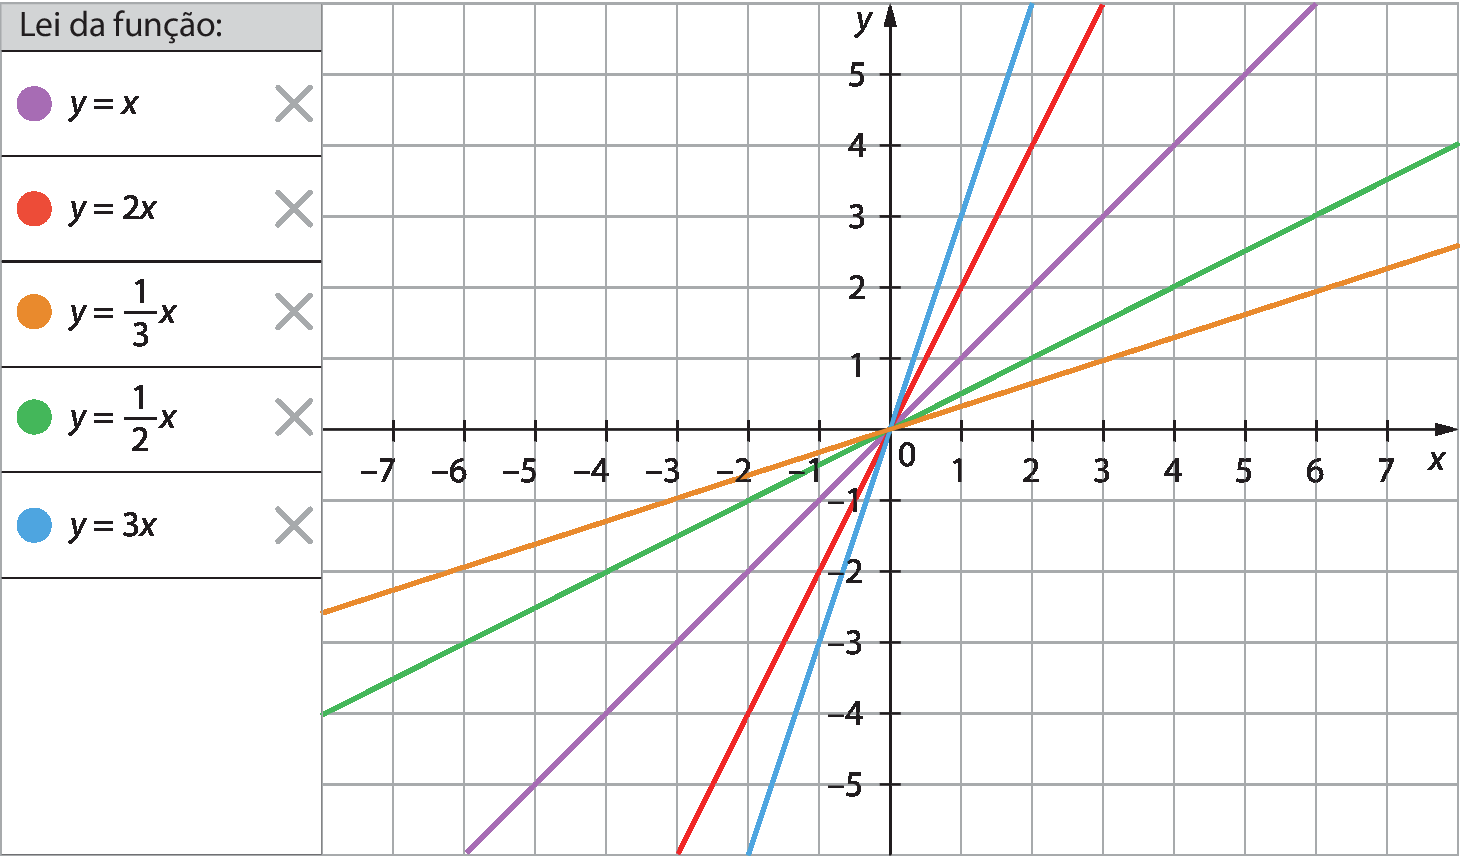 Ilustração. Tela similar a de um software de construção de gráficos. A esquerda, quadro com uma coluna e 6 linhas. Na primeira linha está o texto: lei da função. Na segunda linha, a esquerda círculo roxo e a direita y igual a x. Na terceira linha, a esquerda círculo vermelho e a direita y igual a 2x. Na quarta linha, a esquerda círculo alaranjado e a direita y igual a fração 1 terço vezes x. Na quinta linha, a esquerda círculo verde e a direita y igual a fração 1 meio vezes x. Na sexta linha, a esquerda círculo azul e a direita y igual a 3x. No canto direito da segunda até a sexta linha da tabela, ícone da letra x na cor cinza claro. Na tela está representado um plano cartesiano e cinco retas concorrentes e coloridas. Malha quadriculada com eixo horizontal perpendicular a um eixo vertical. No eixo horizontal estão indicados os números inteiros de menos 7 até 7 e ele está rotulado como x. No eixo vertical estão indicados os números inteiros de menos 5 até 5 e ele está rotulado como y. A reta azul passa pelos eixos no ponto com coordenadas: 0 e 0 e passa pelo ponto com coordenadas 1 e 3. A reta vermelha passa pelos eixos no ponto com coordenadas: 0 e 0 e passa pelo ponto com coordenadas 1 e 2. A reta roxa passa pelos eixos no ponto com coordenadas: 0 e 0 e passa pelo ponto com coordenadas 1 e 1. A reta verde passa pelos eixos no ponto com coordenadas: 0 e 0 e passa pelo ponto com coordenadas 2 e 1. A reta alaranjada passa pelos eixos no ponto com coordenadas: 0 e 0 e passa pelo ponto com coordenadas 3 e 1.